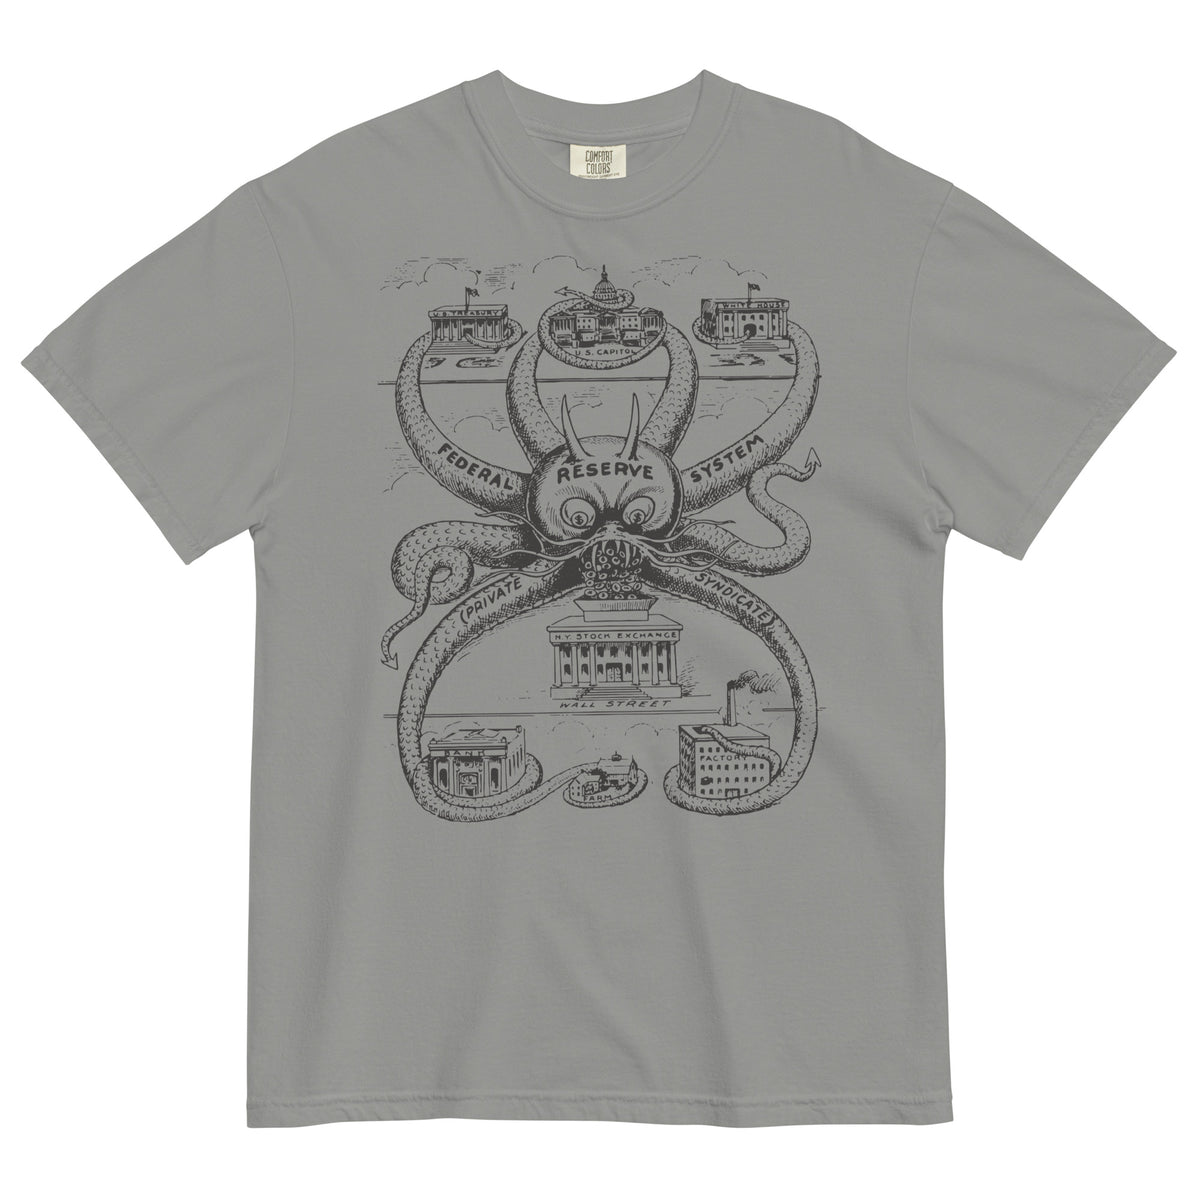 Federal Reserve Octopus Garment-dyed Heavyweight T-shirt